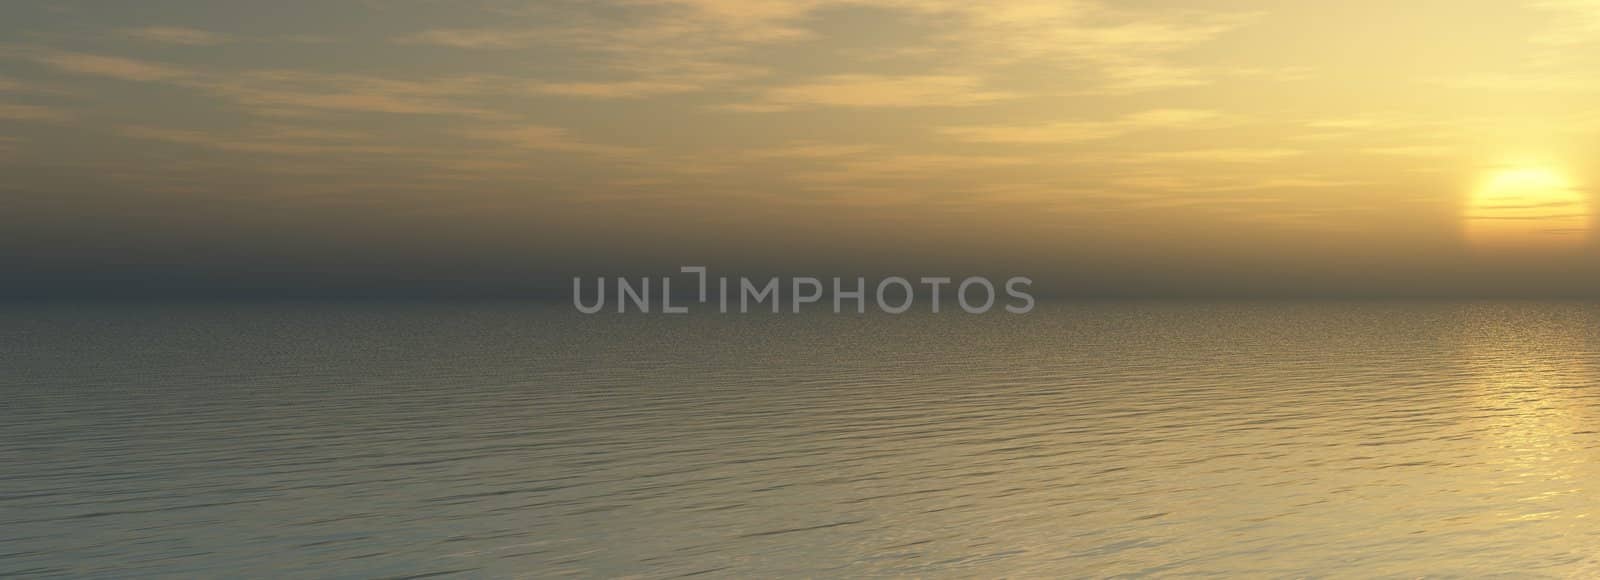 The Panorama of the sundown on sea. The Illustration.